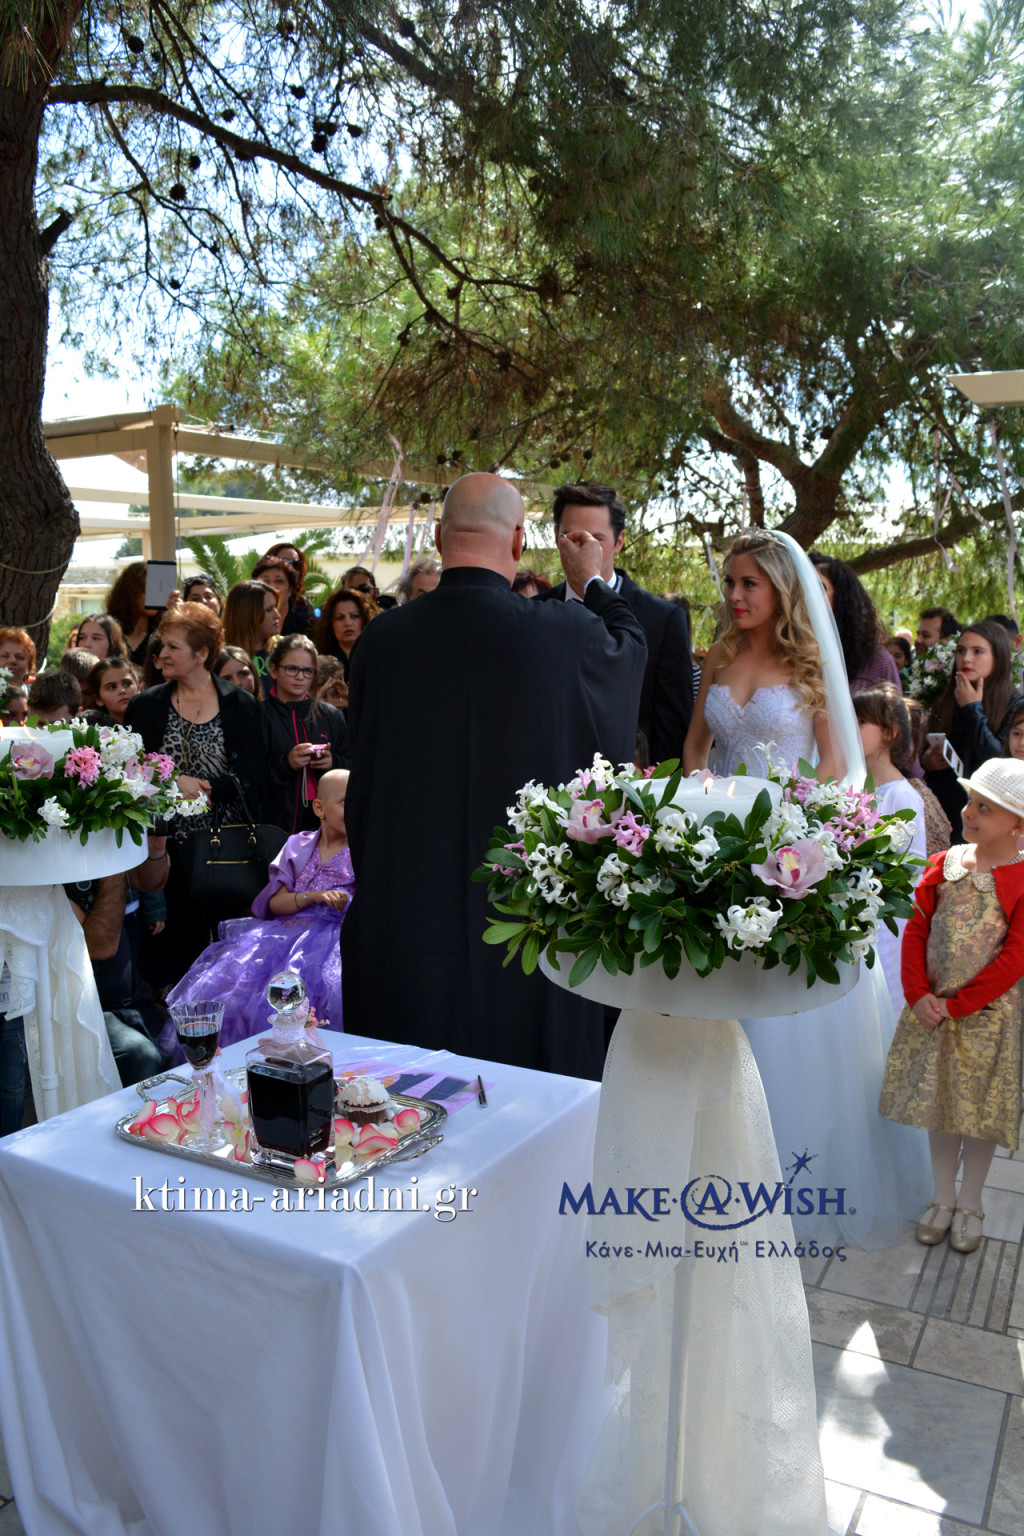 Ο γάμος της Barbie και του Ken στο κτήμα Αριάδνη για το Make a Wish Ελλάδος